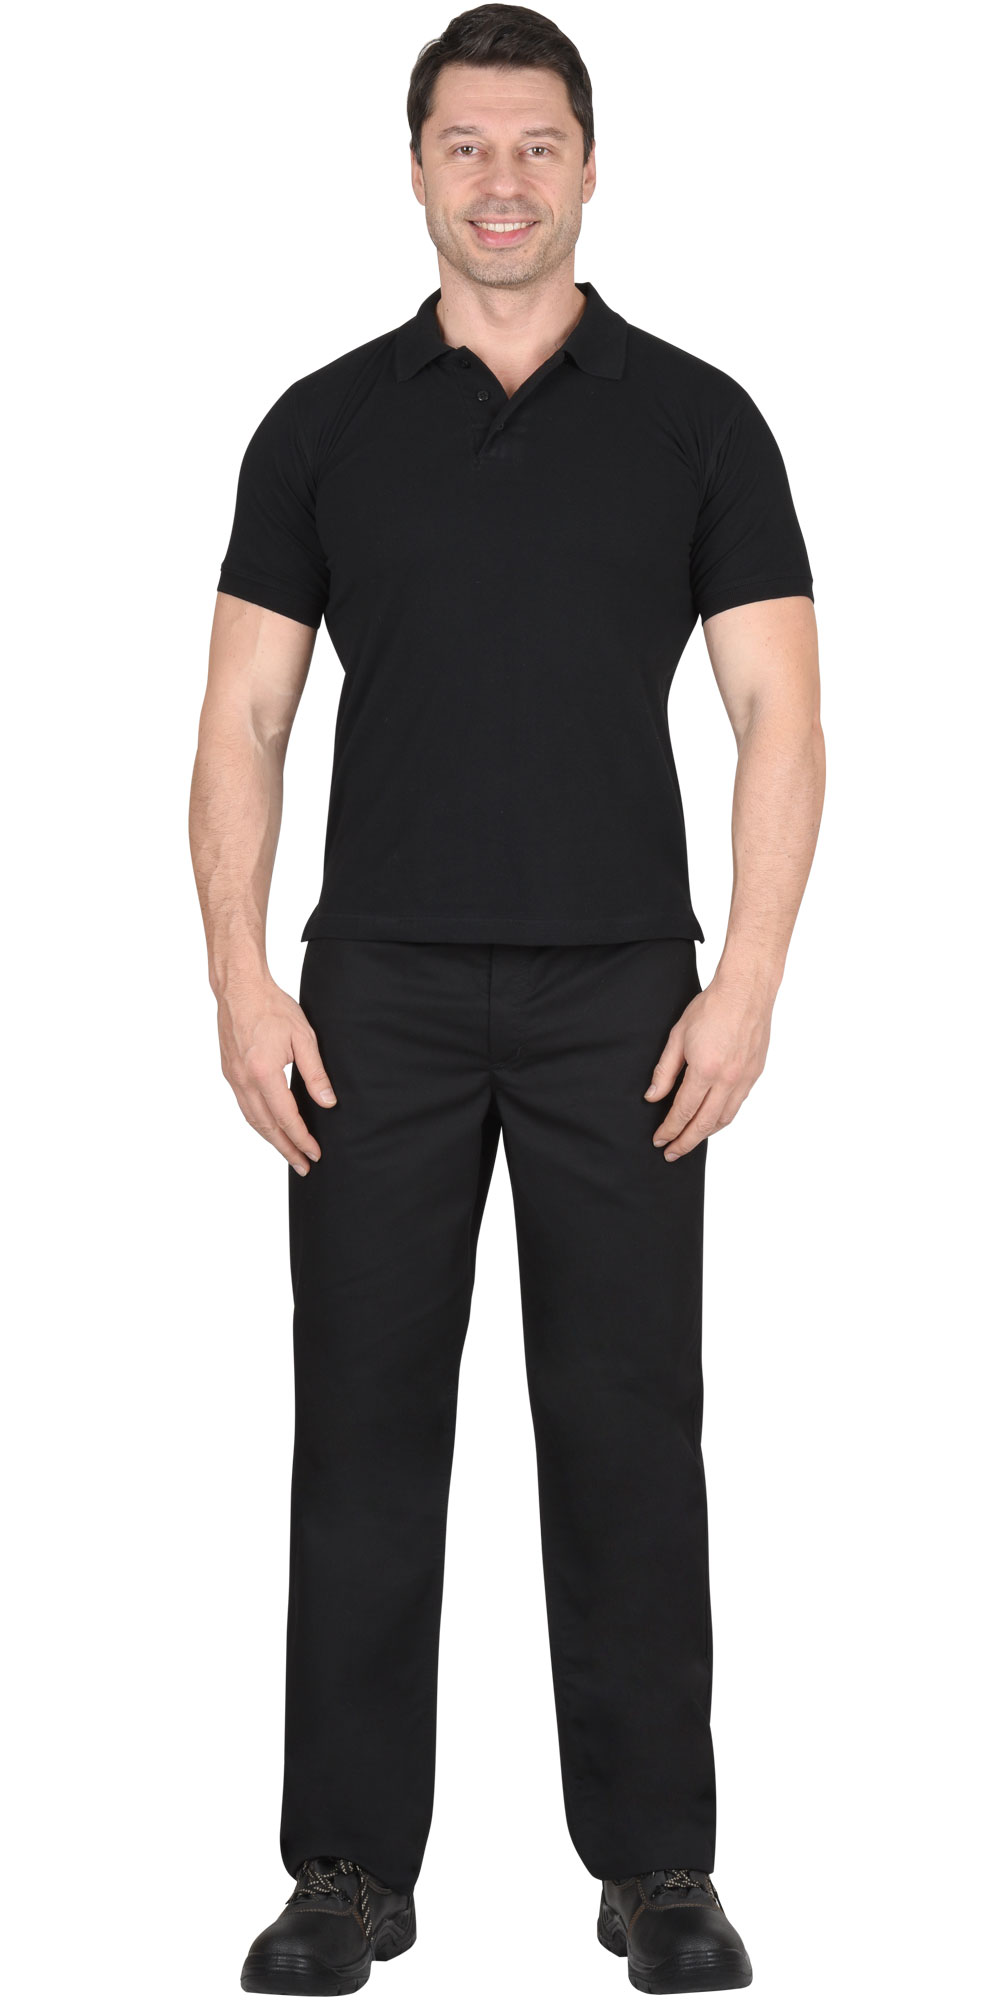 Рубашка-поло мужская, рукав короткий, цвет: черный, плотность 180г/кв.м